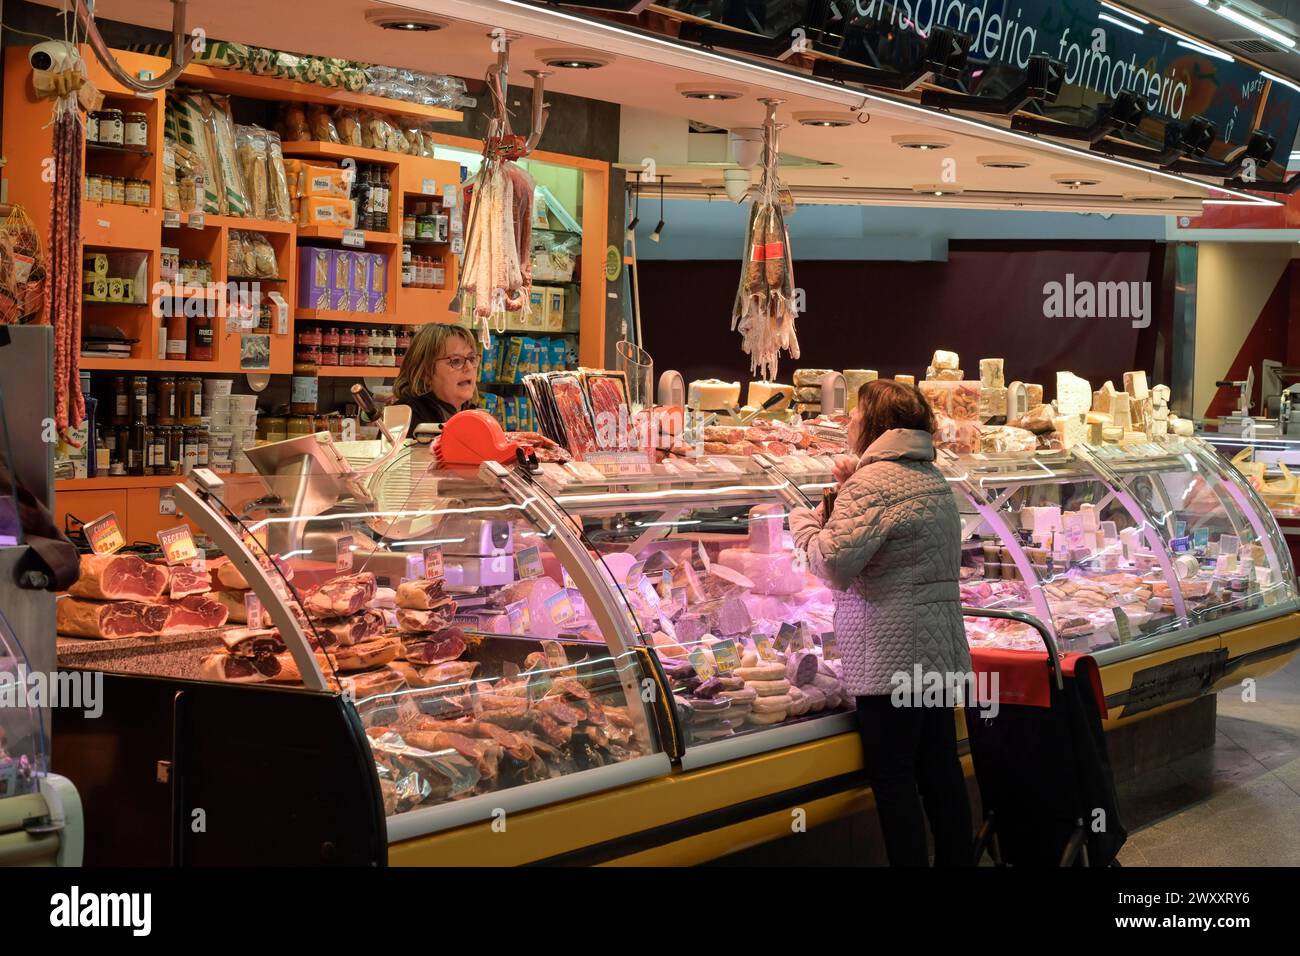 Formaggio, prosciutto e salsicce, Mercat de Santa Caterina, Barcellona, Catalogna, Spagna Foto Stock